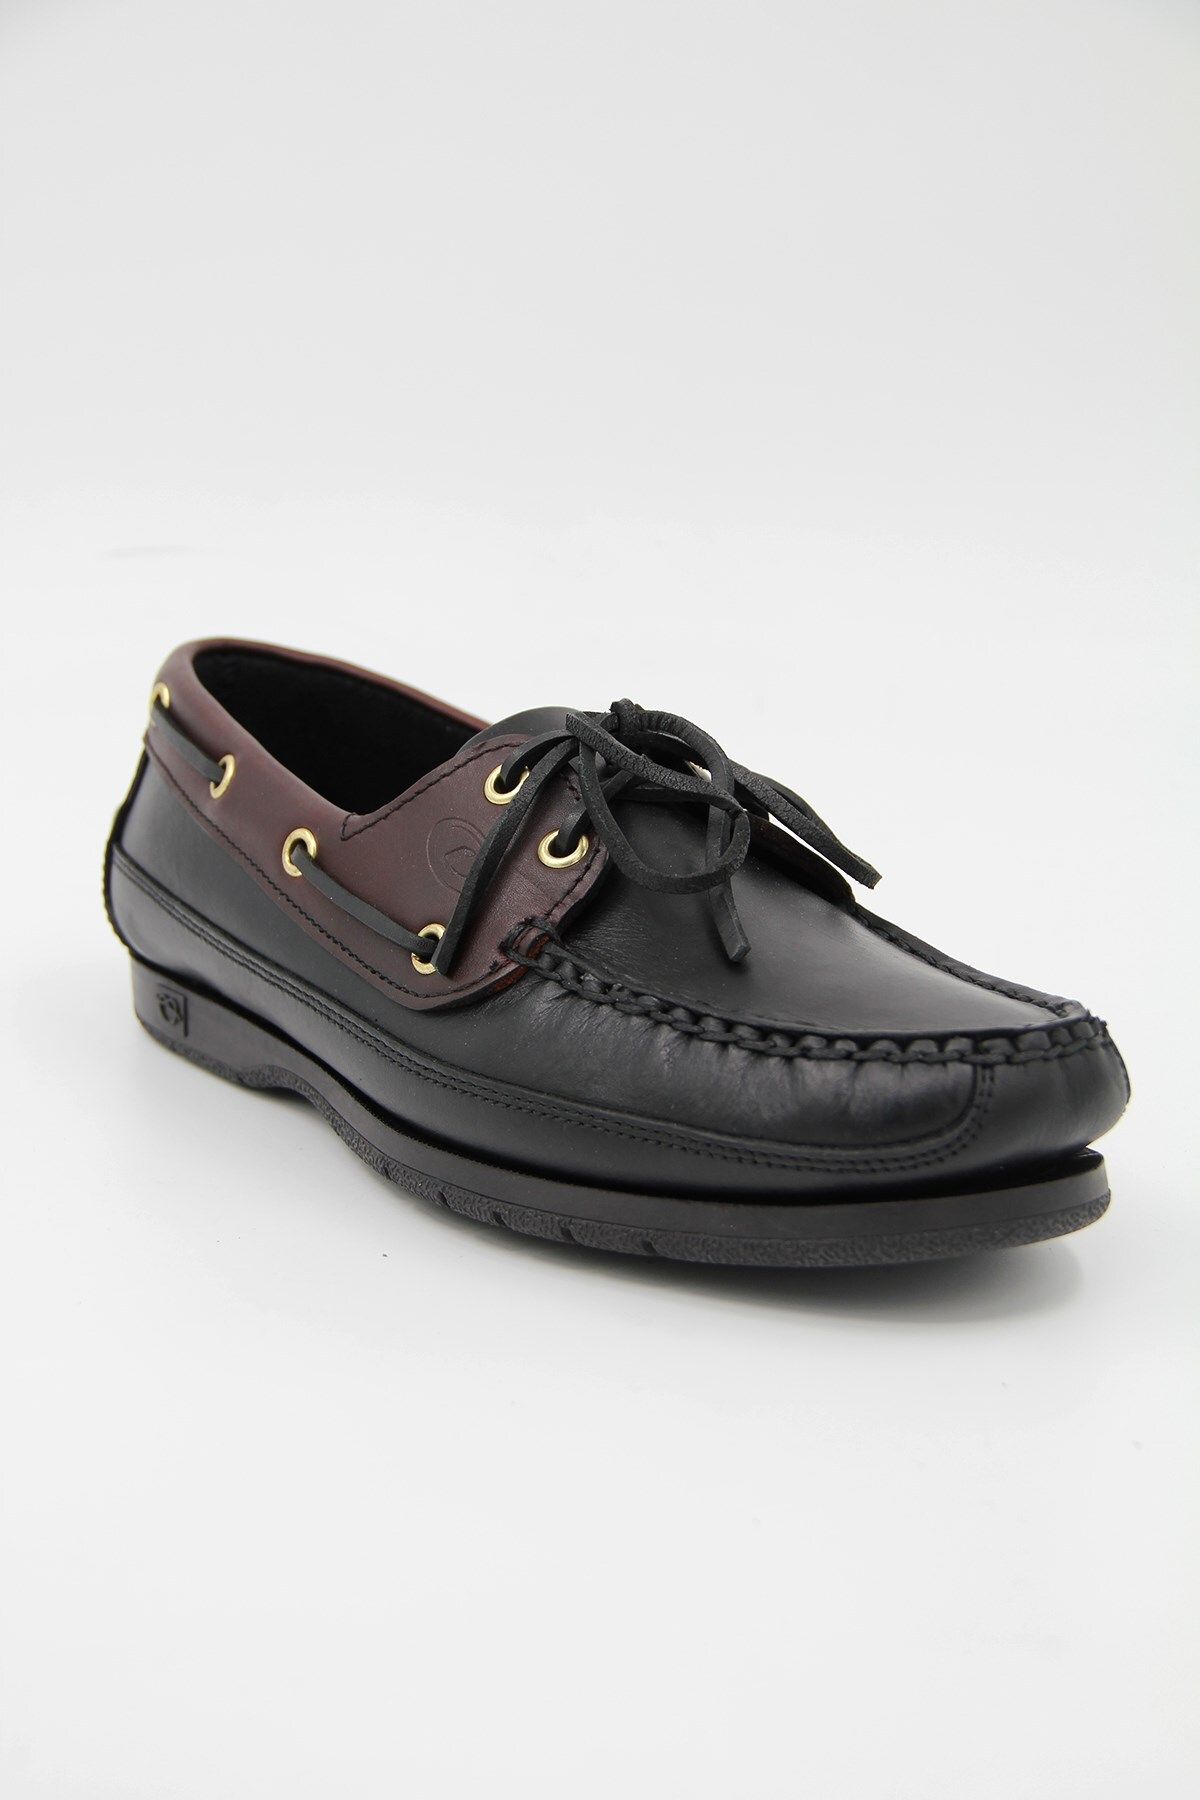 Dexter 619-15 Erkek Comfort Ayakkabı - Siyah